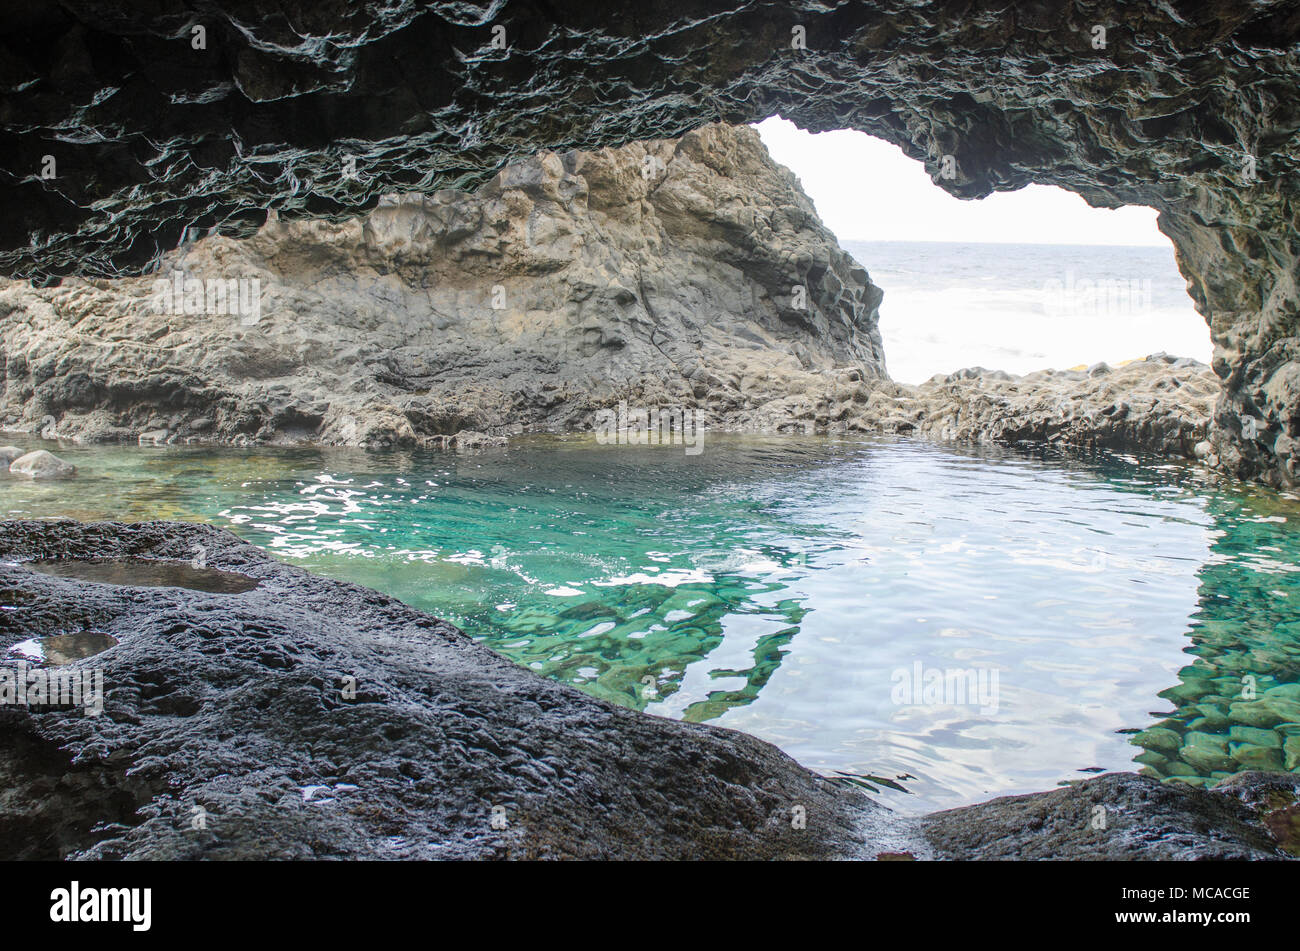 Charco Azul, bleu piscine, une piscine naturelle aux eaux turquoises à El Hierro, îles canaries, espagne. Banque D'Images